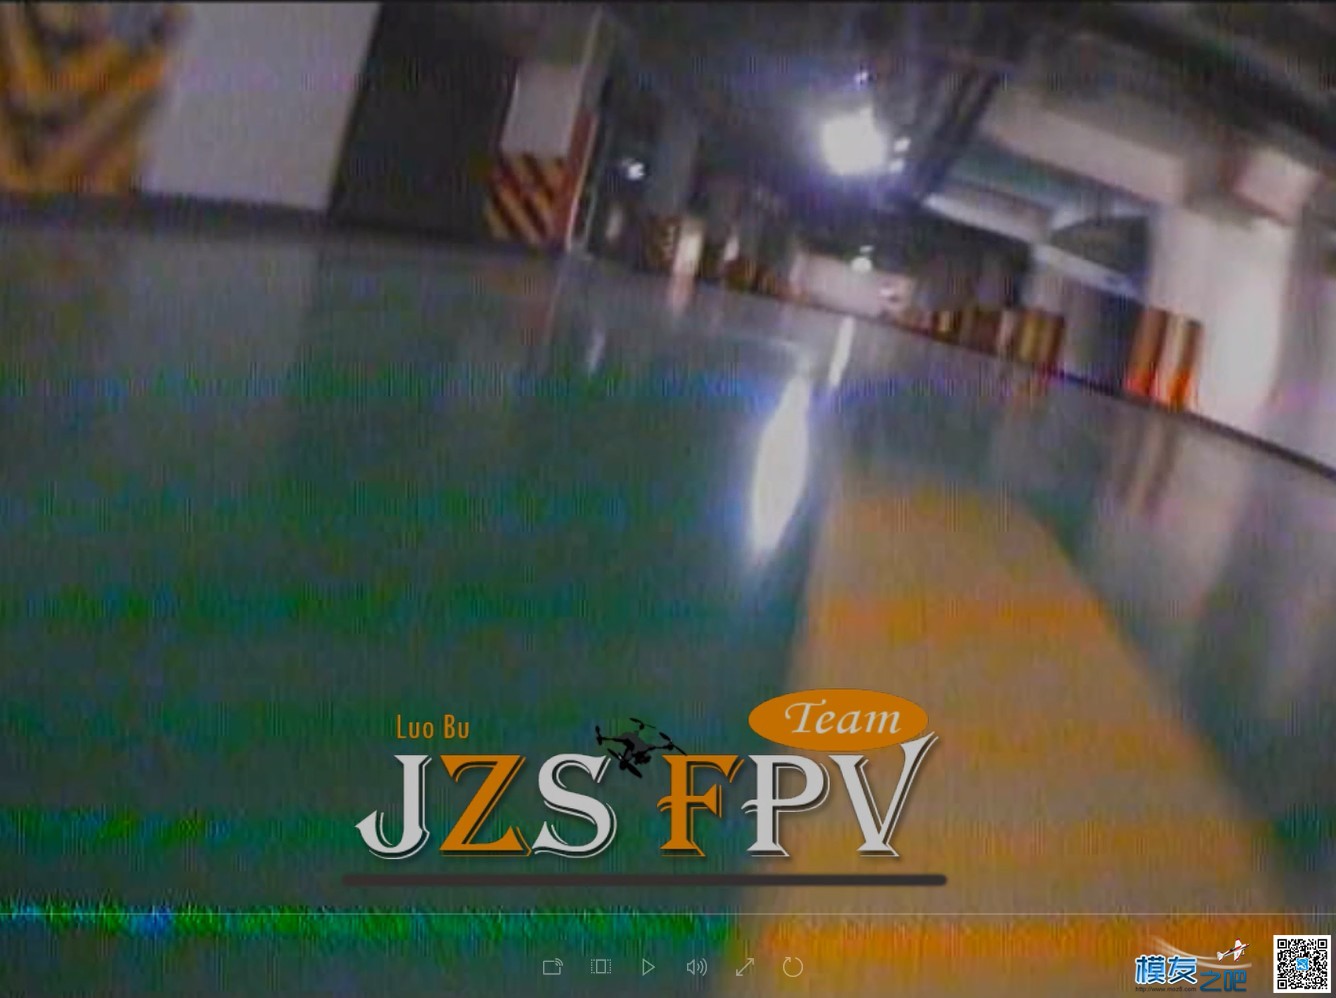 萝卜周日QAV210穿越车库首飞,DVR录制（JZS FPV） 轰20首飞成功,轰20首飞图,首飞什么意思,轰20首飞 作者:义乌大萝卜 7347 